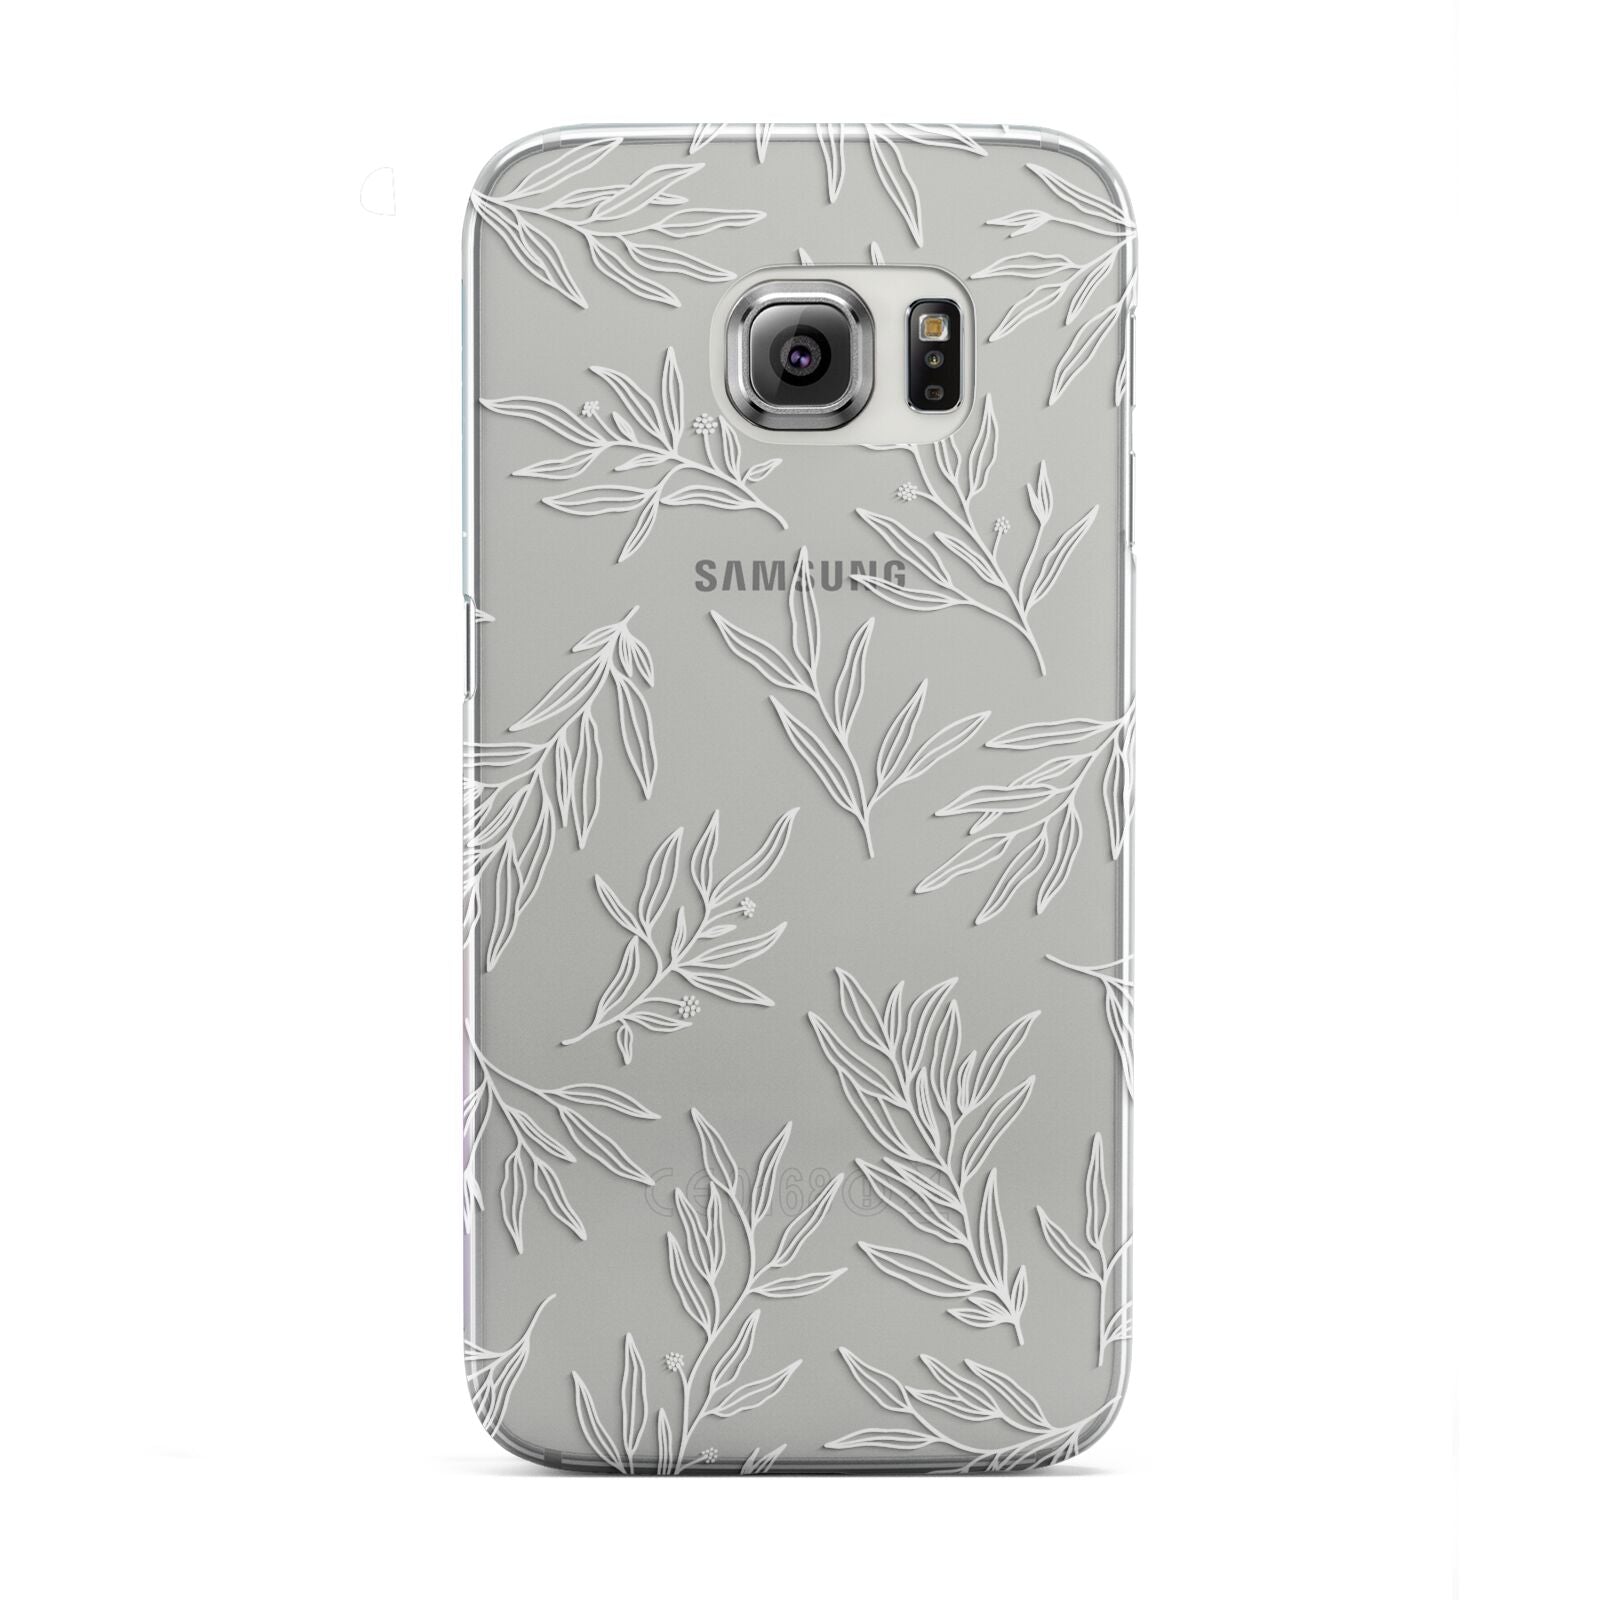 Botanical Leaf Samsung Galaxy S6 Edge Case